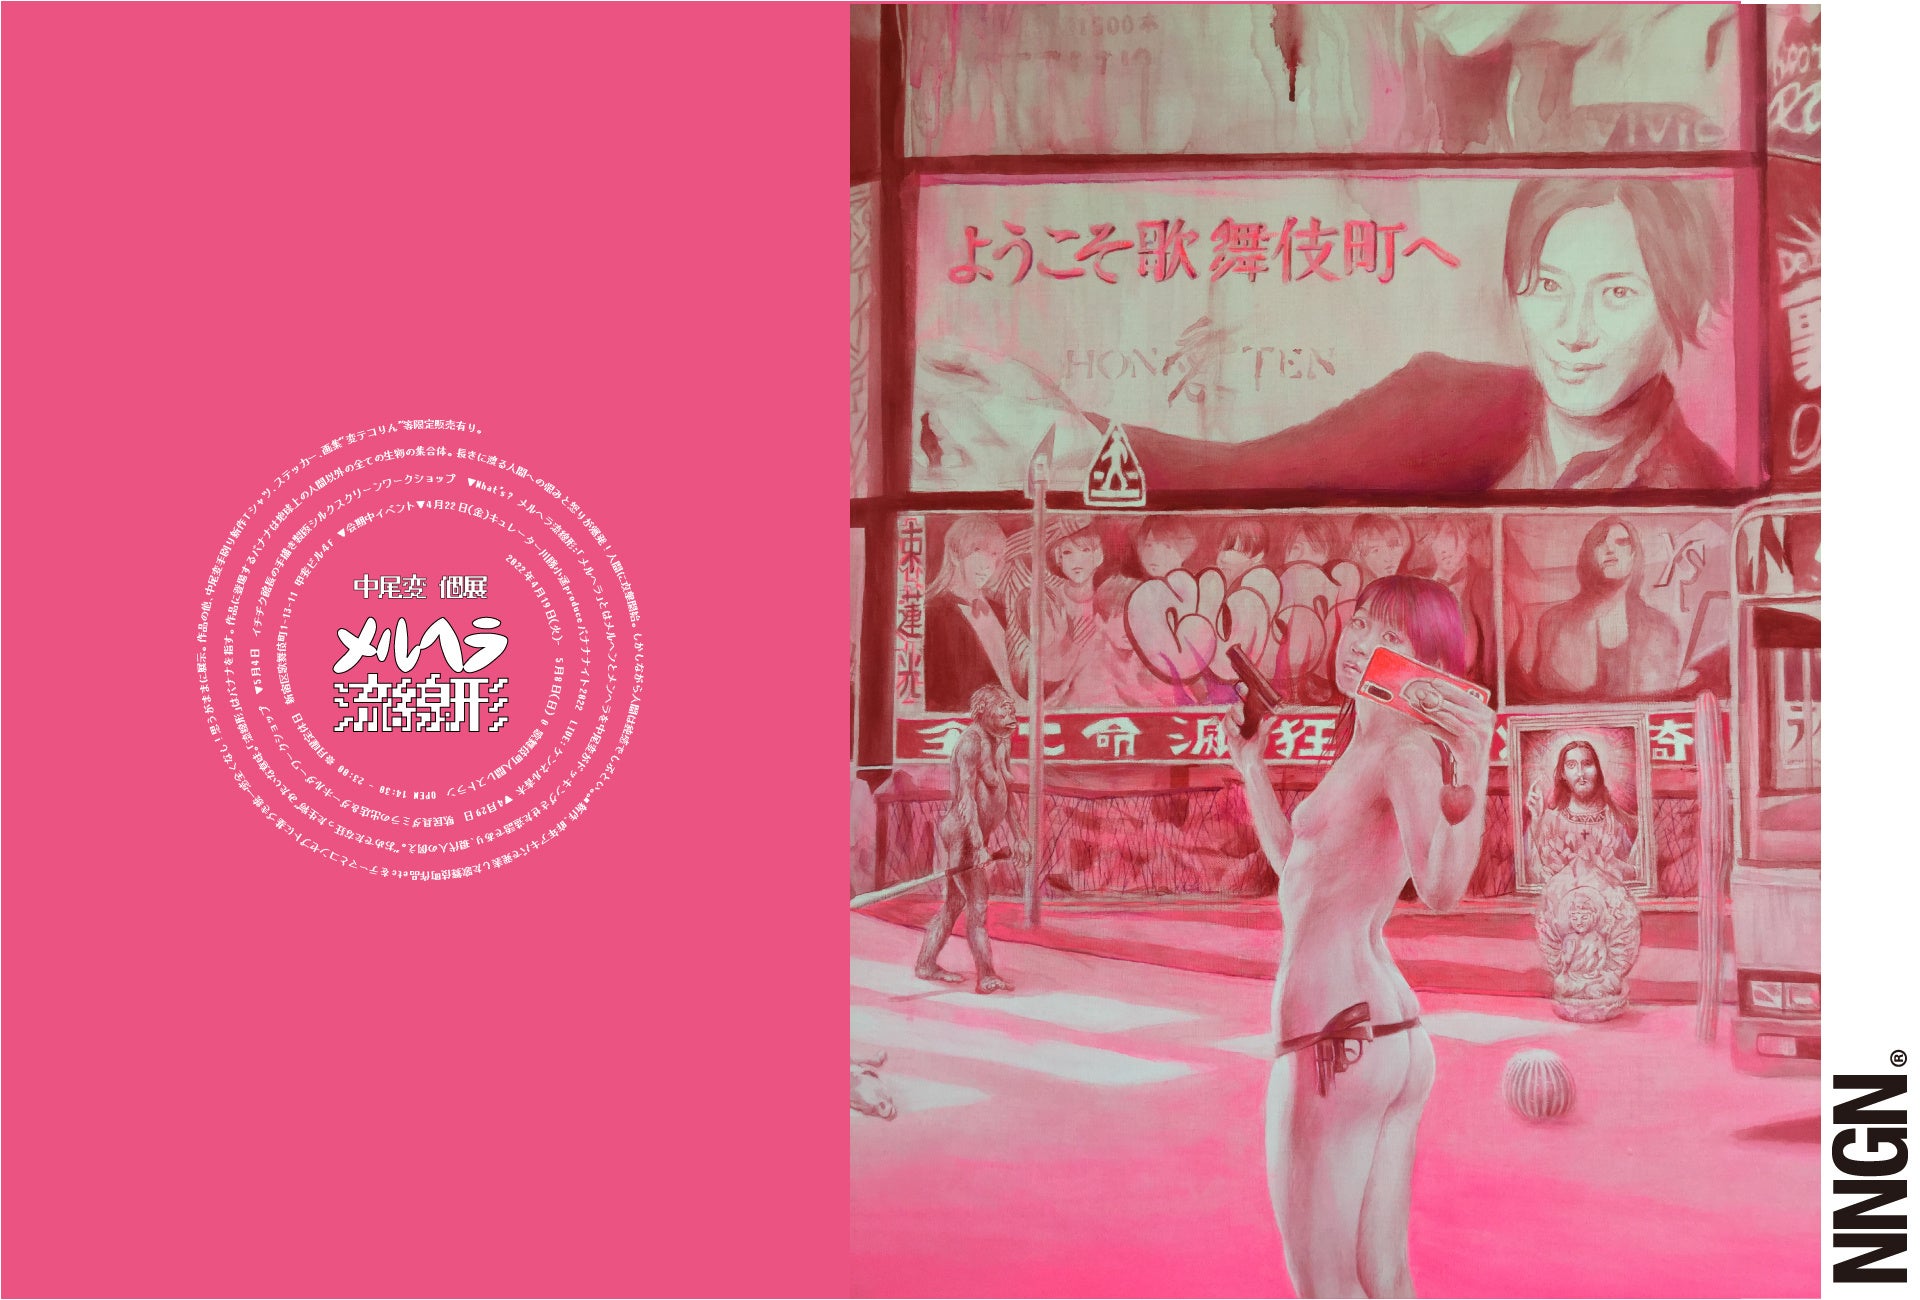 令和の春画師、中尾変がカオスでキッチュな作品を放出する個展「メルヘラ流線形」が2022年4月19日より歌舞伎町 人間レストランで開催